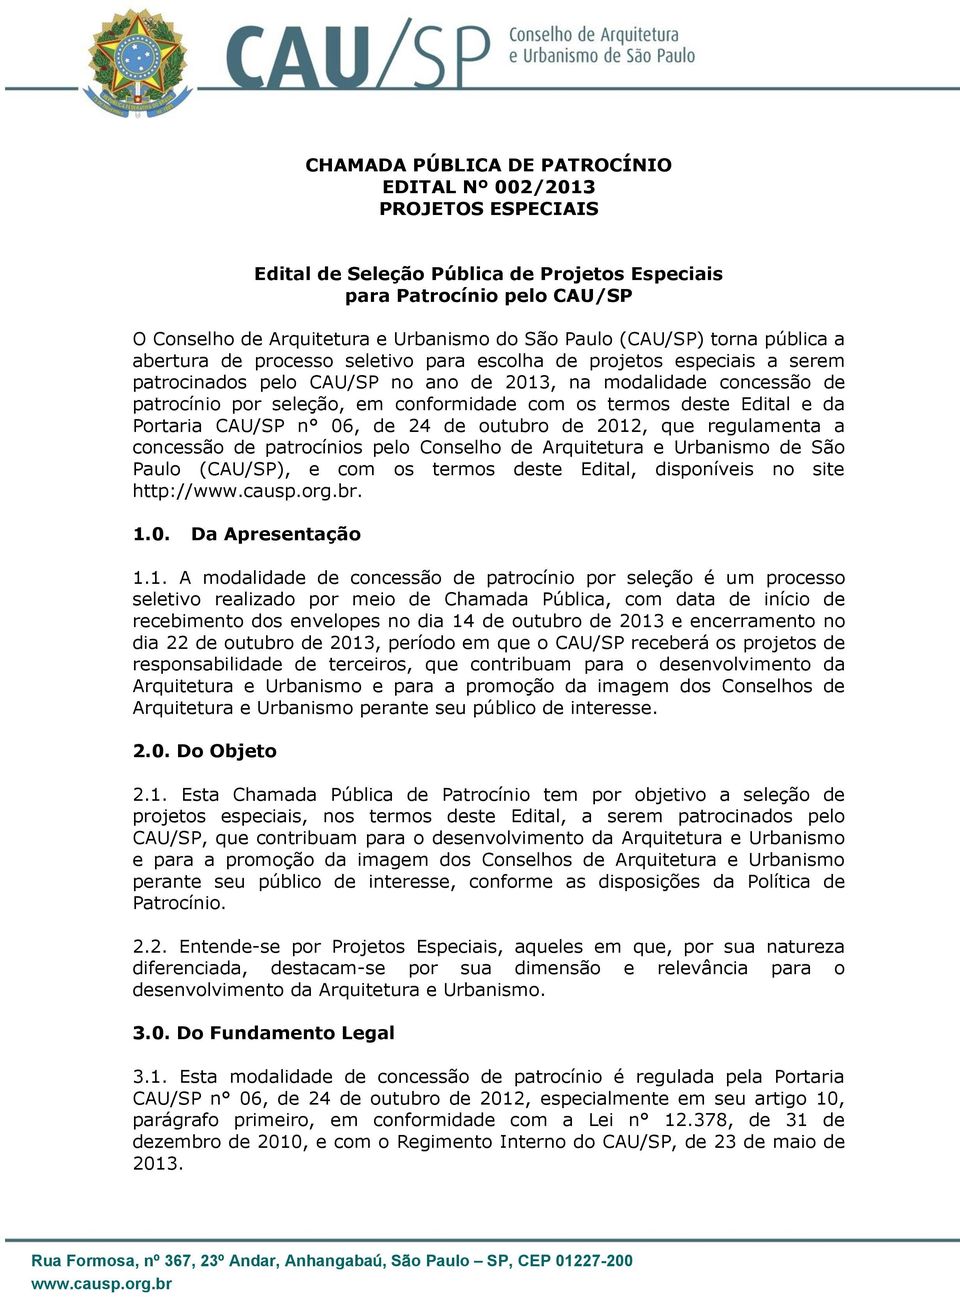 conformidade com os termos deste Edital e da Portaria CAU/SP n 06, de 24 de outubro de 2012, que regulamenta a concessão de patrocínios pelo Conselho de Arquitetura e Urbanismo de São Paulo (CAU/SP),